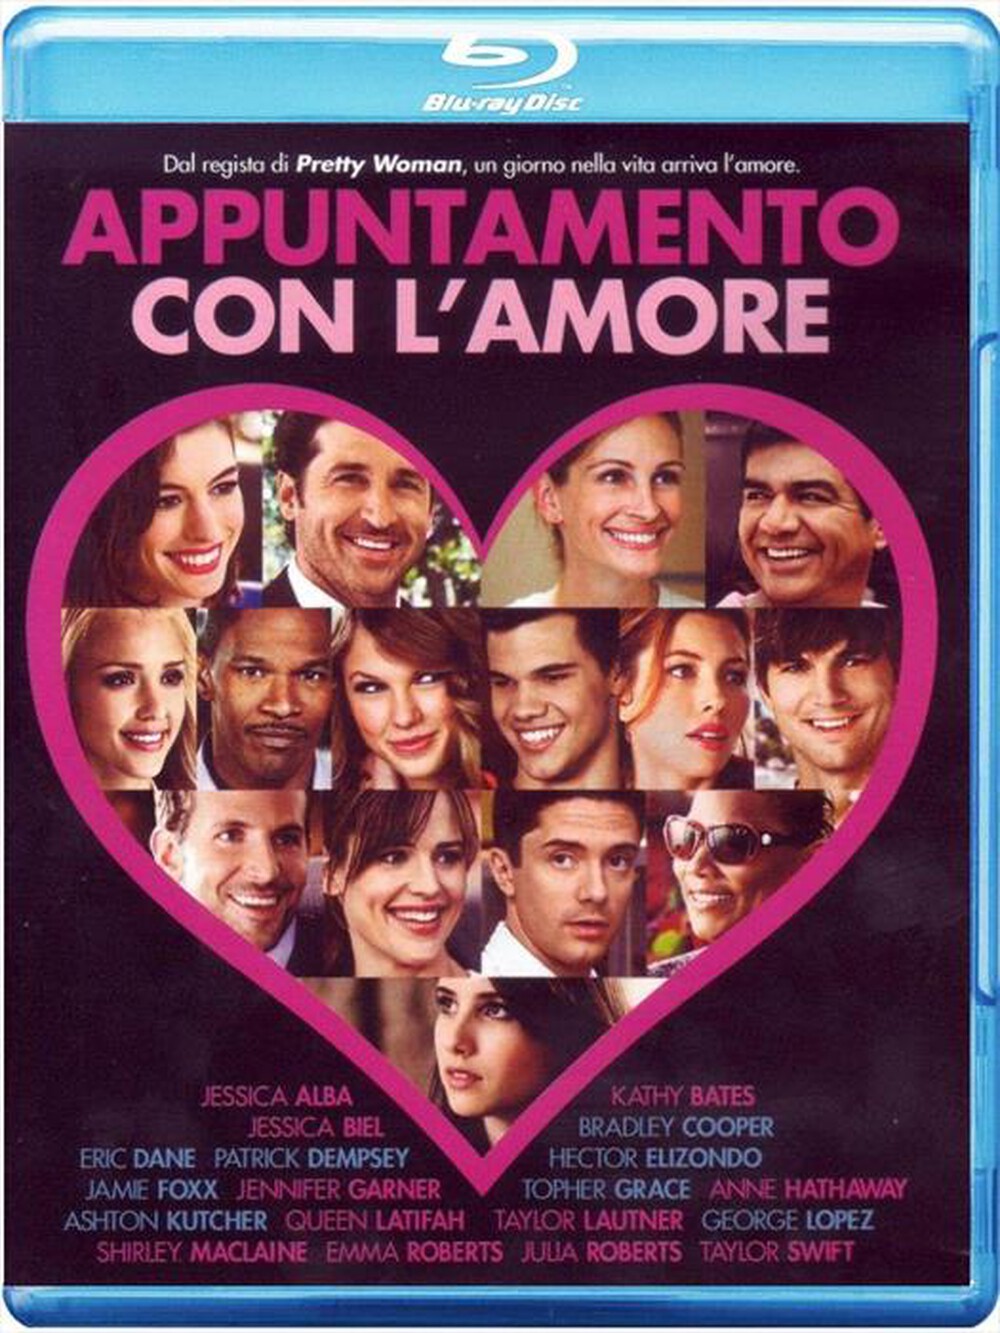 "WARNER HOME VIDEO - Appuntamento Con l'Amore (2010)"